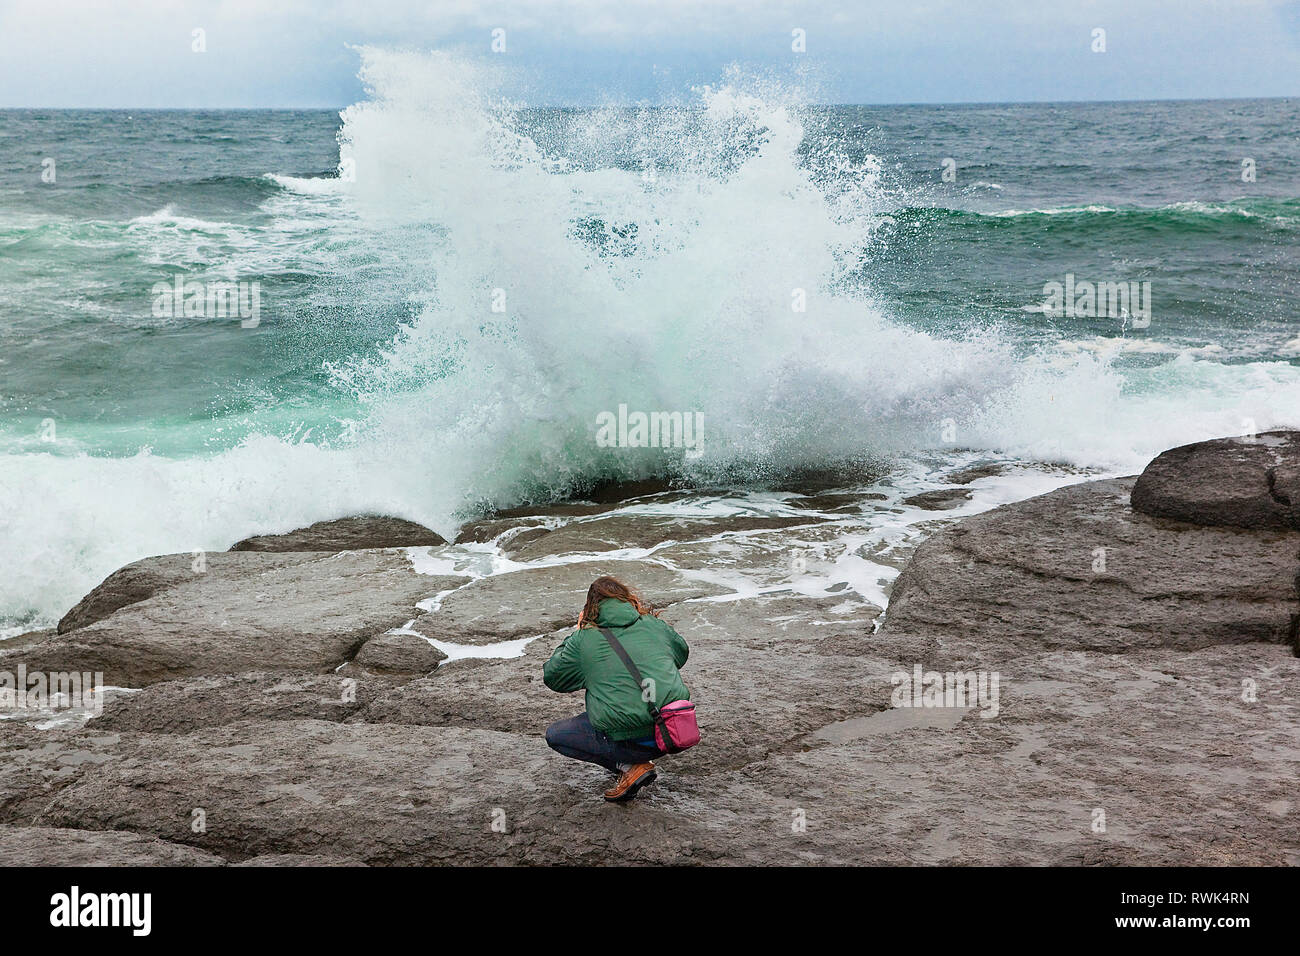 Jeune homme accroupi sur une saillie rocheuse dans une tentative de photographier le fracas des vagues de près. Le lieu historique national de Port au Choix, Port au Choix, Terre-Neuve, Canada Banque D'Images